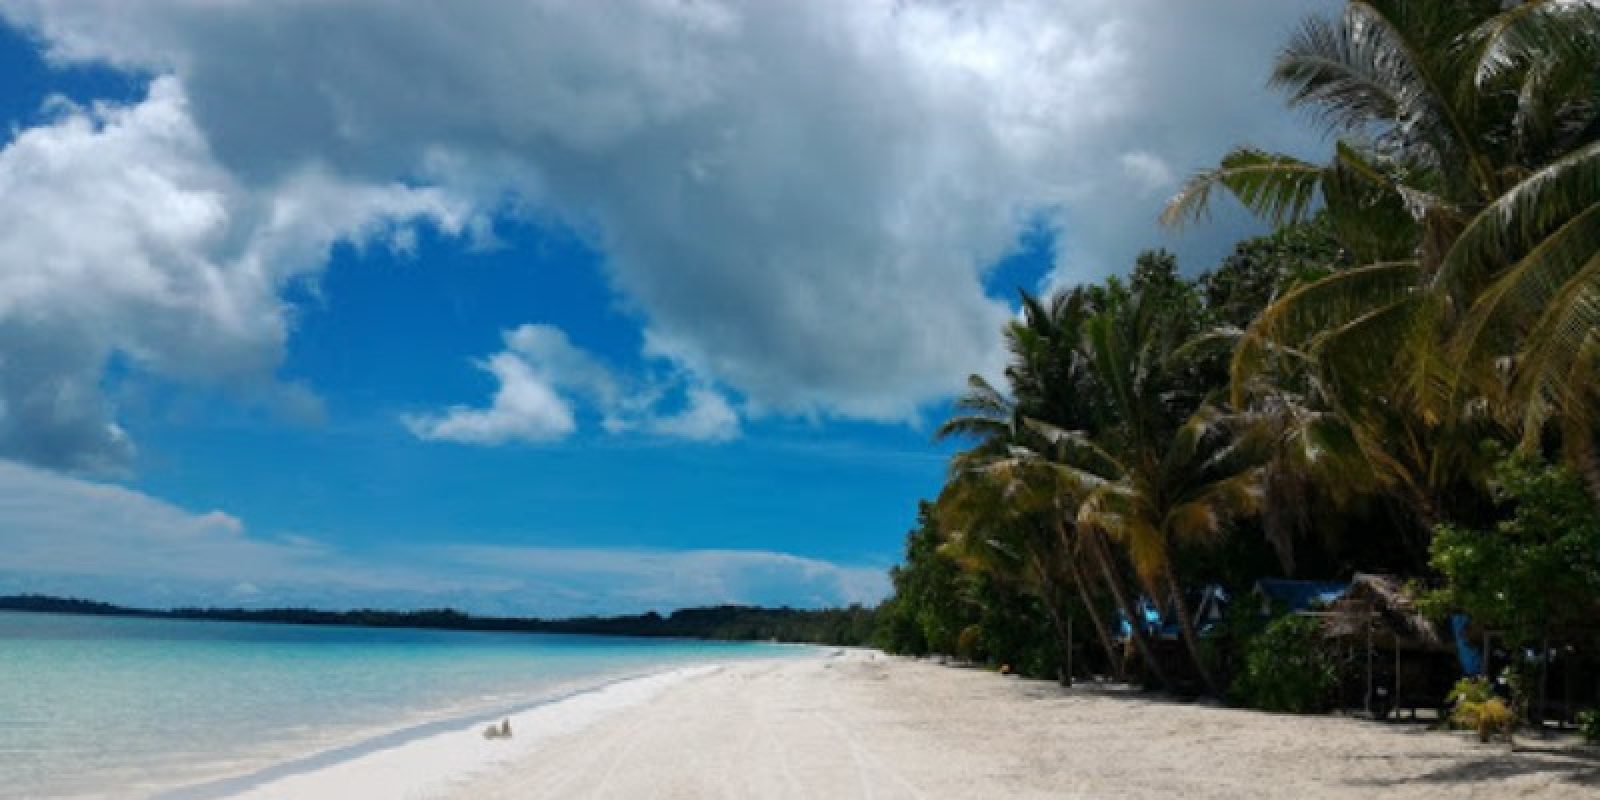 10 Wisata Pantai Di Ambon Yang Paling Hits